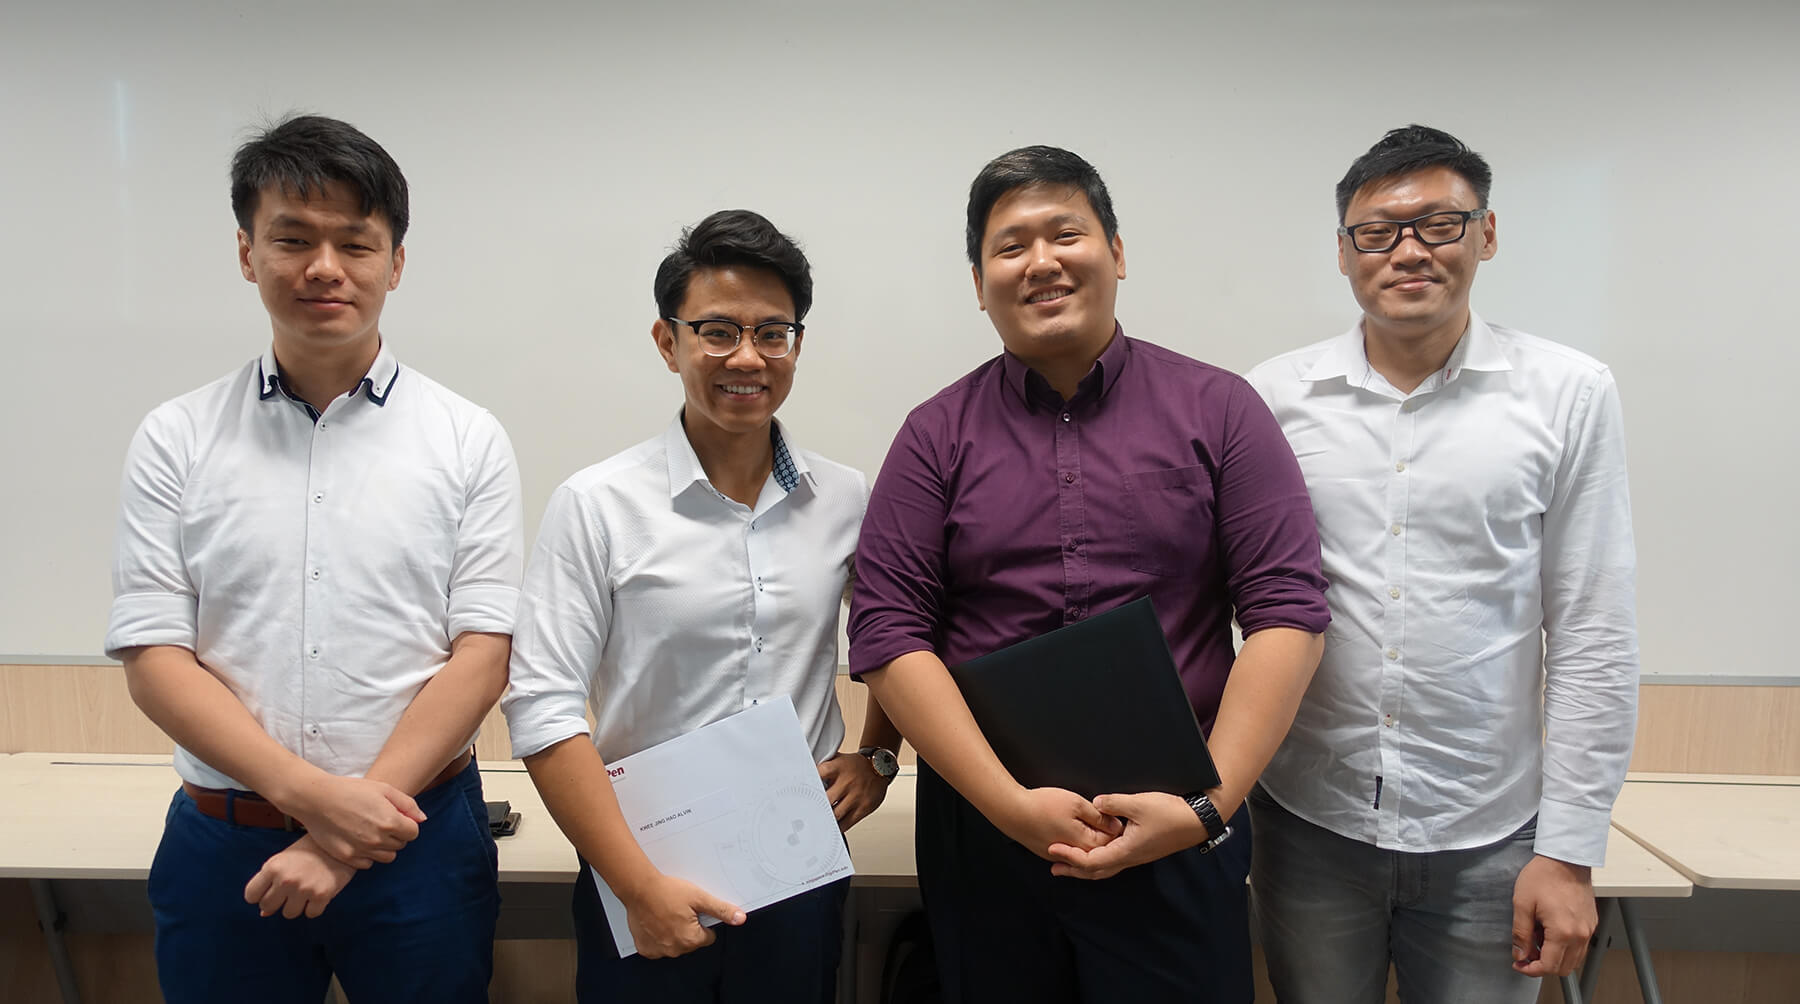 Four CE program graduates, Tan Ken Yang, Alvin Kwee, Yap Yuanzhen, and Ian Tan, line up for a group photo.